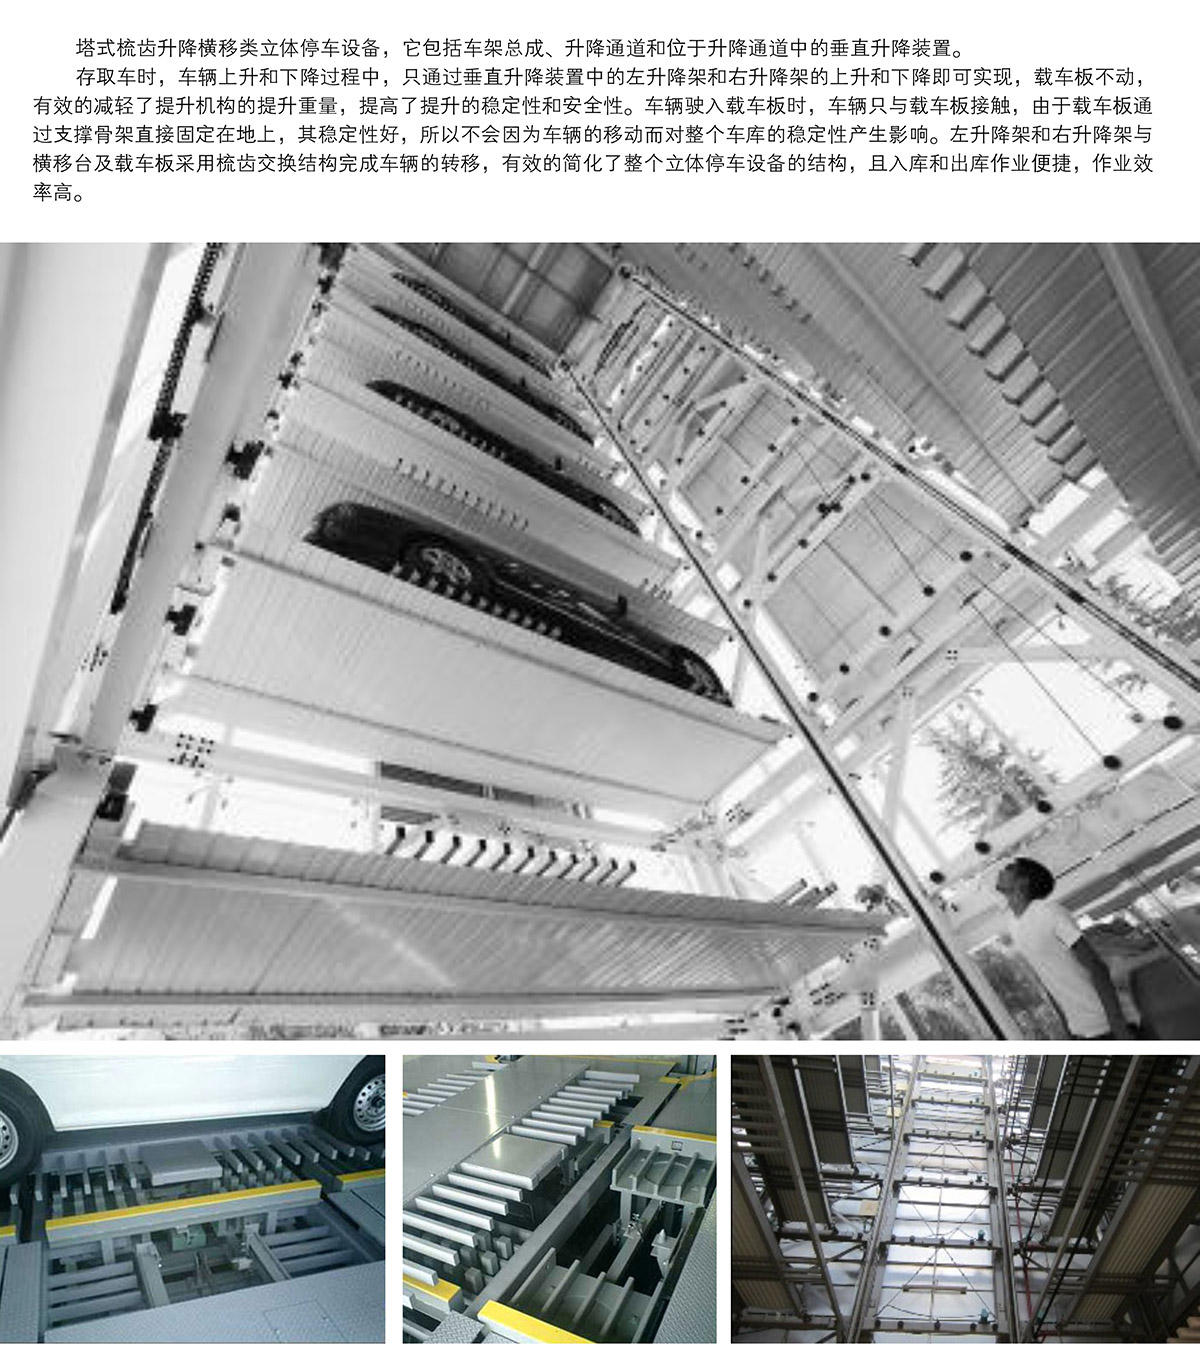 机械车库PSH梳齿交换升降横移机械停车设备图片展示.jpg